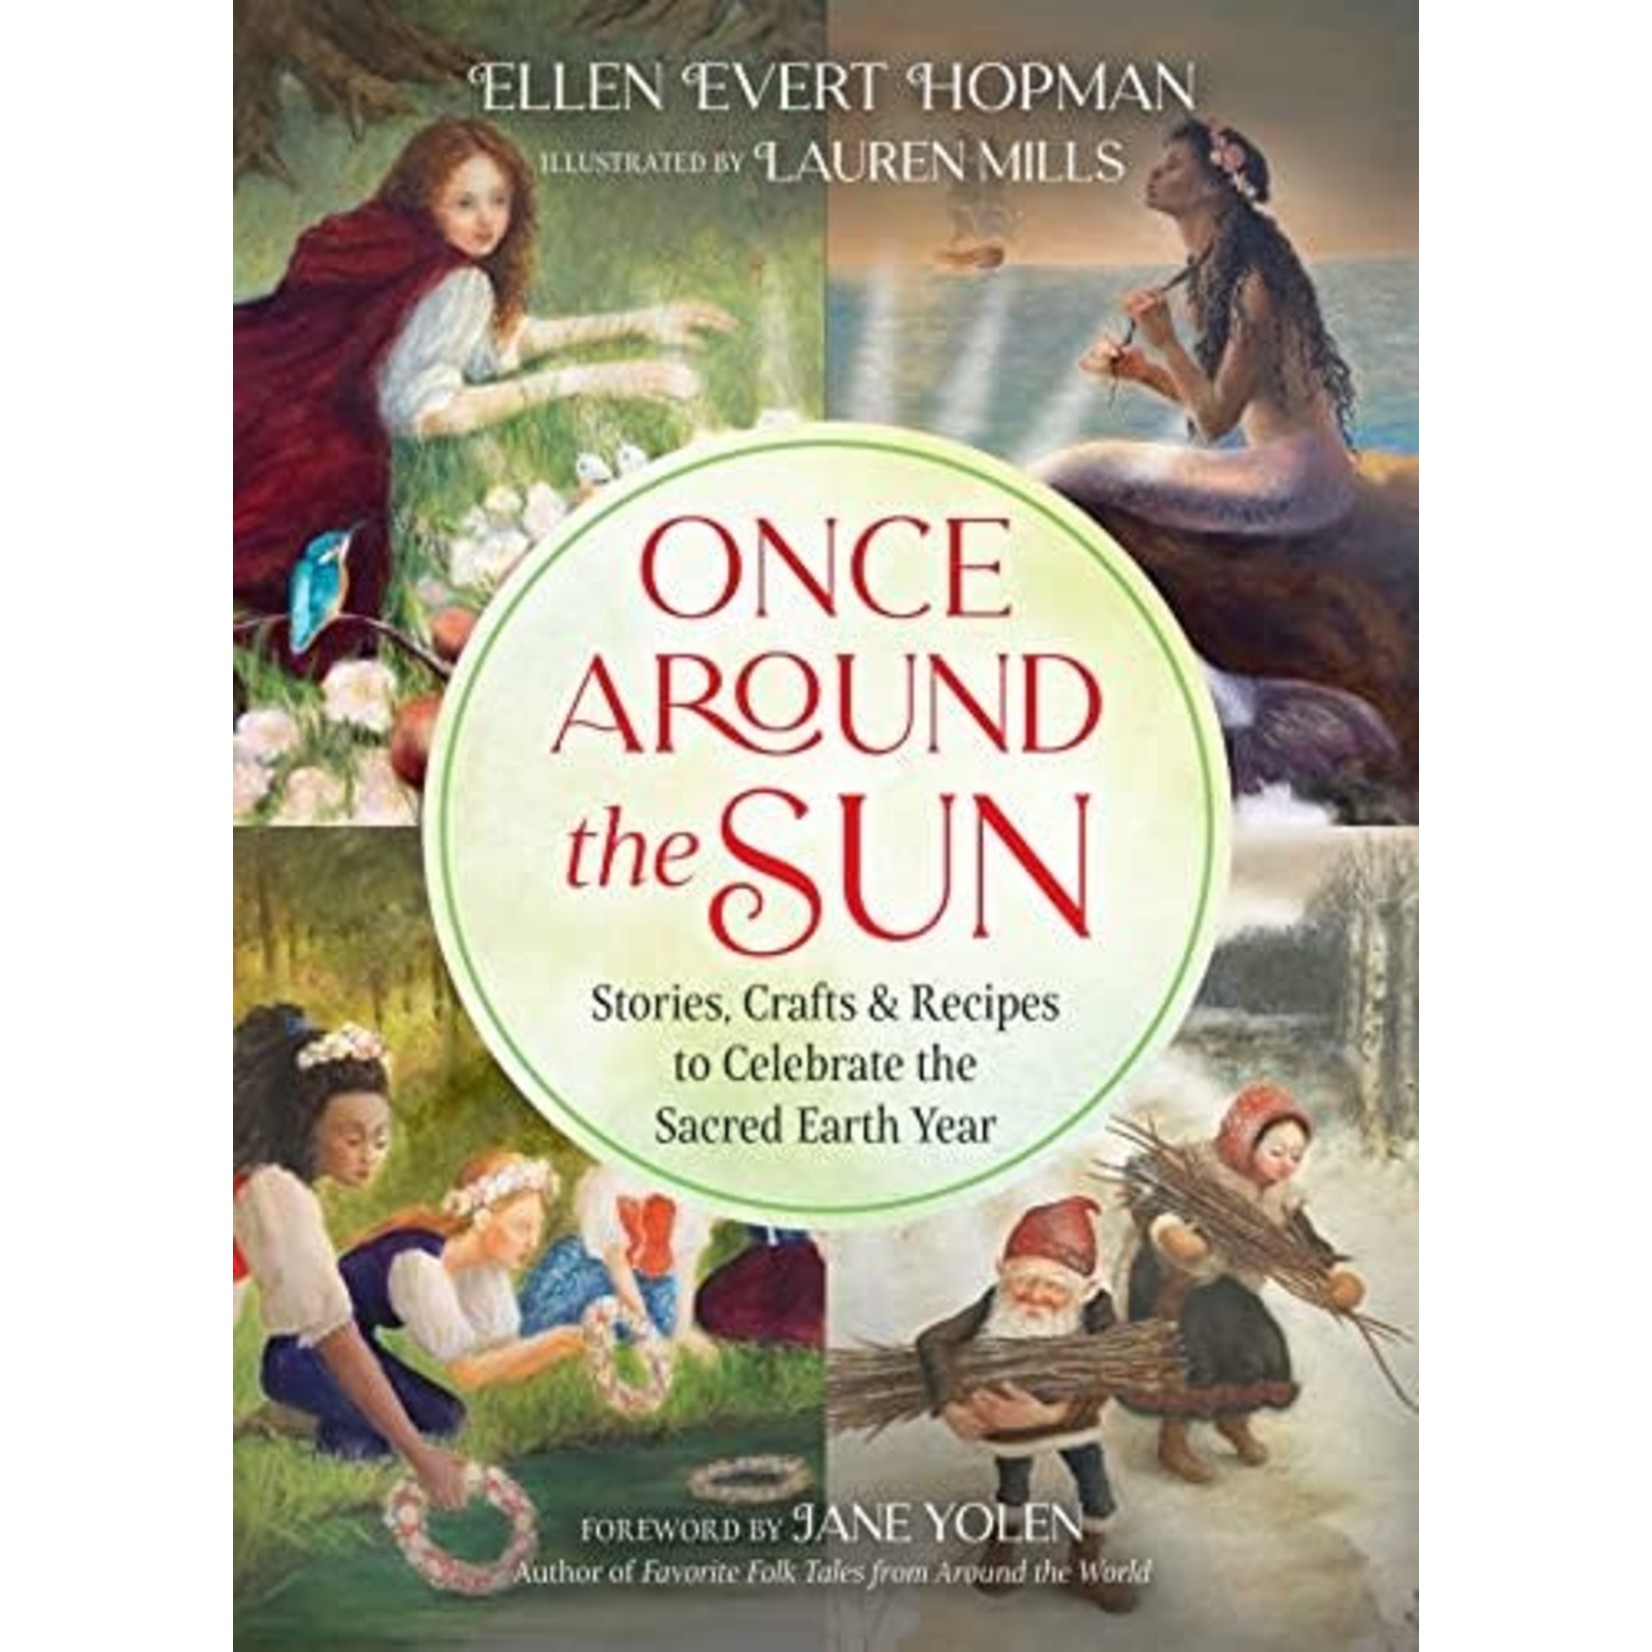 Once Around The Sun by Ellen Evert Hopman